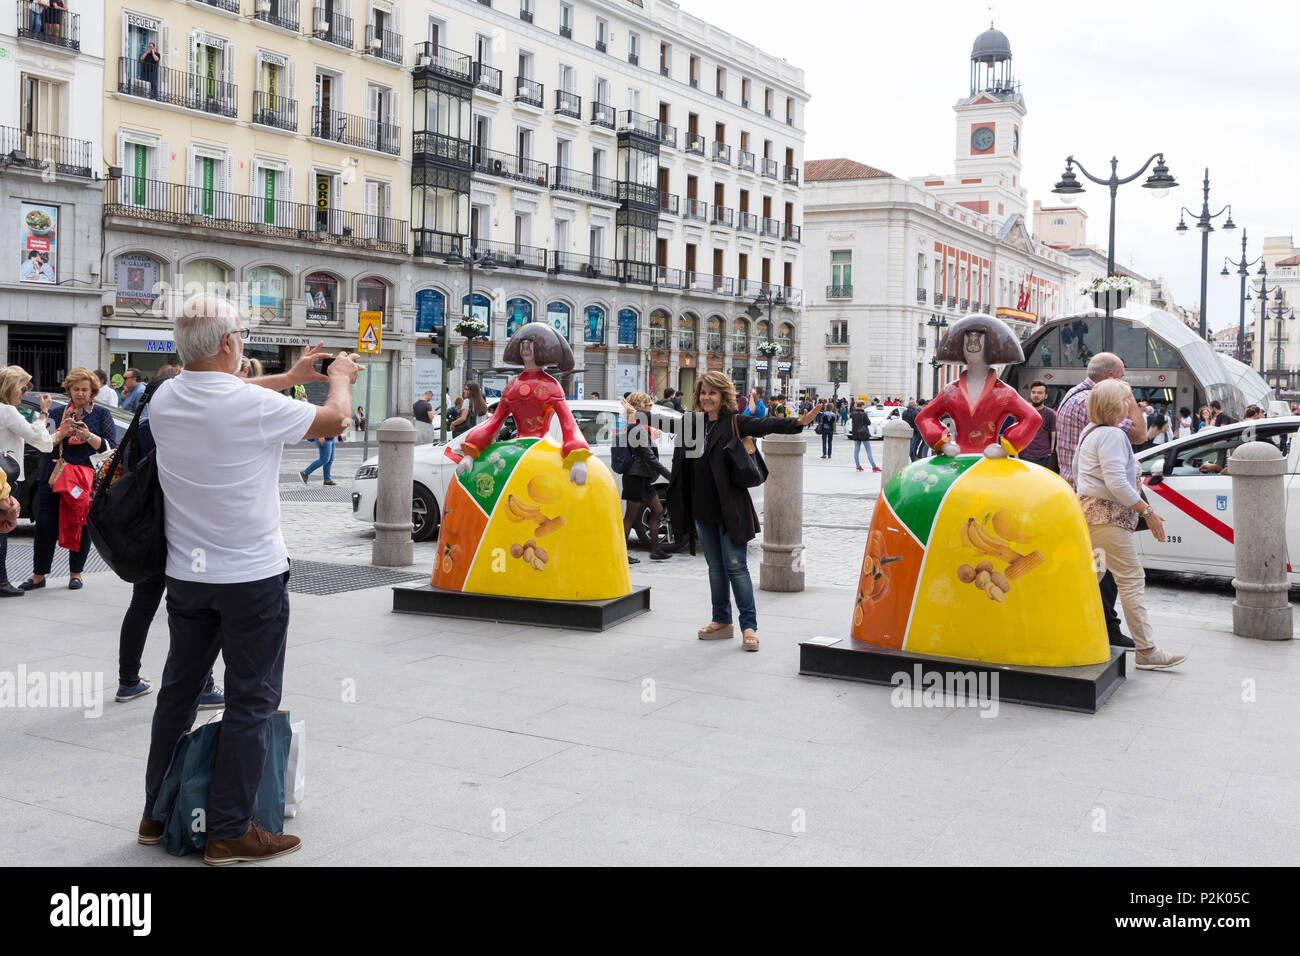 Madrid, Espagne : Madrid, Espagne : les touristes posent avec 'Menina' sculptures à Puerta del Sol. La place publique animée en plein cœur de Madrid est le centre de Banque D'Images